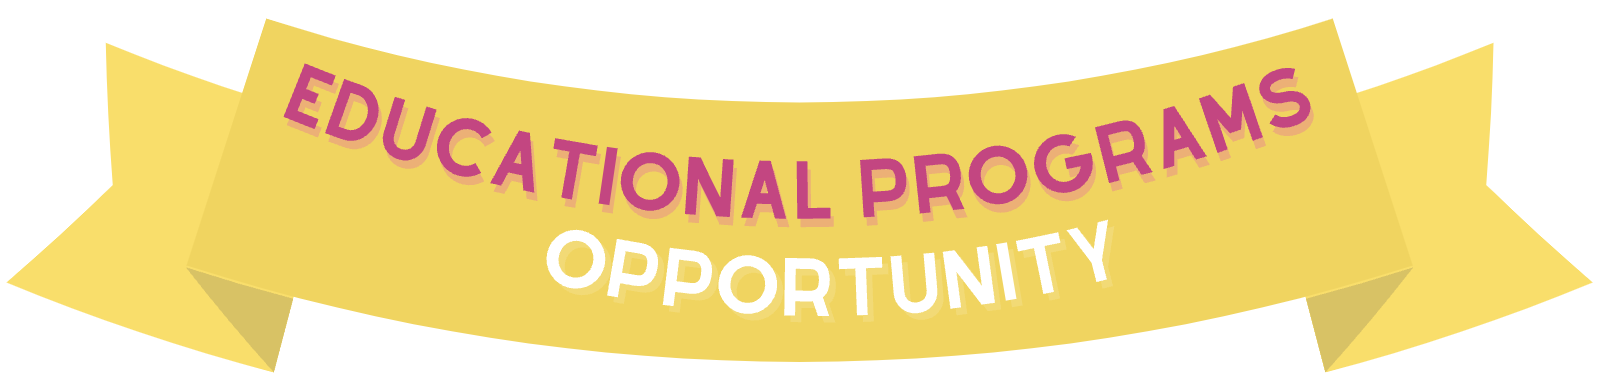 Educational Program Opportunity banner